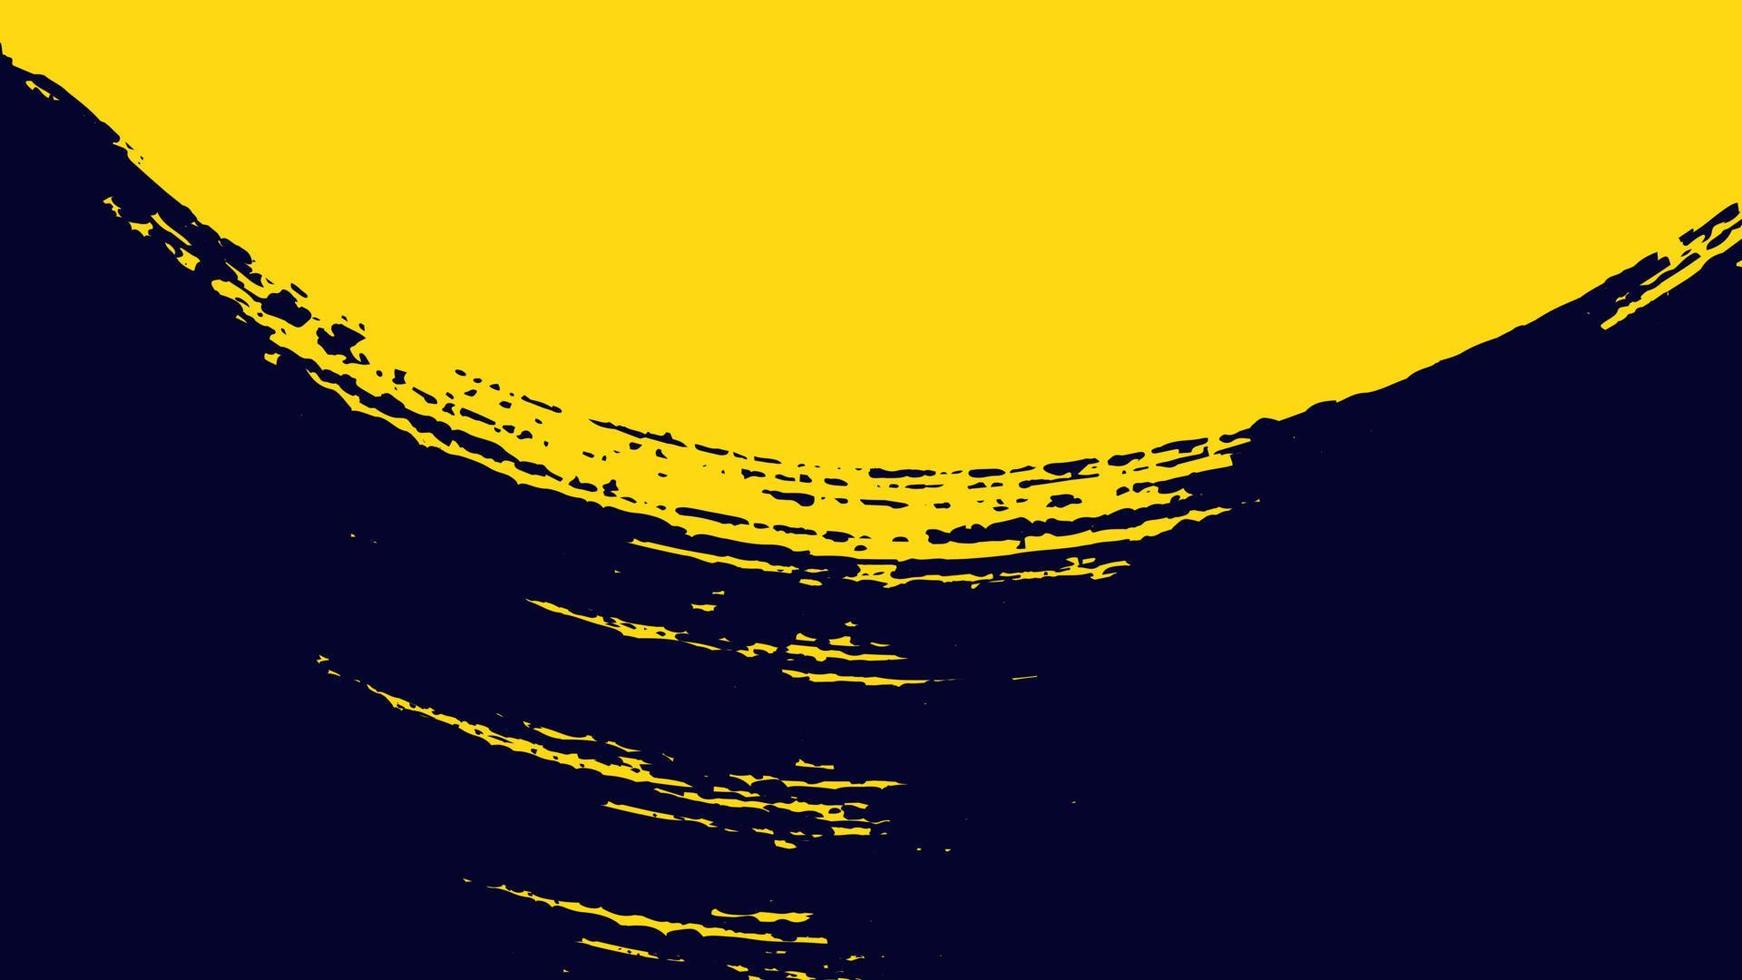 sfondo di miniature moderne grunge nero e giallo vettore